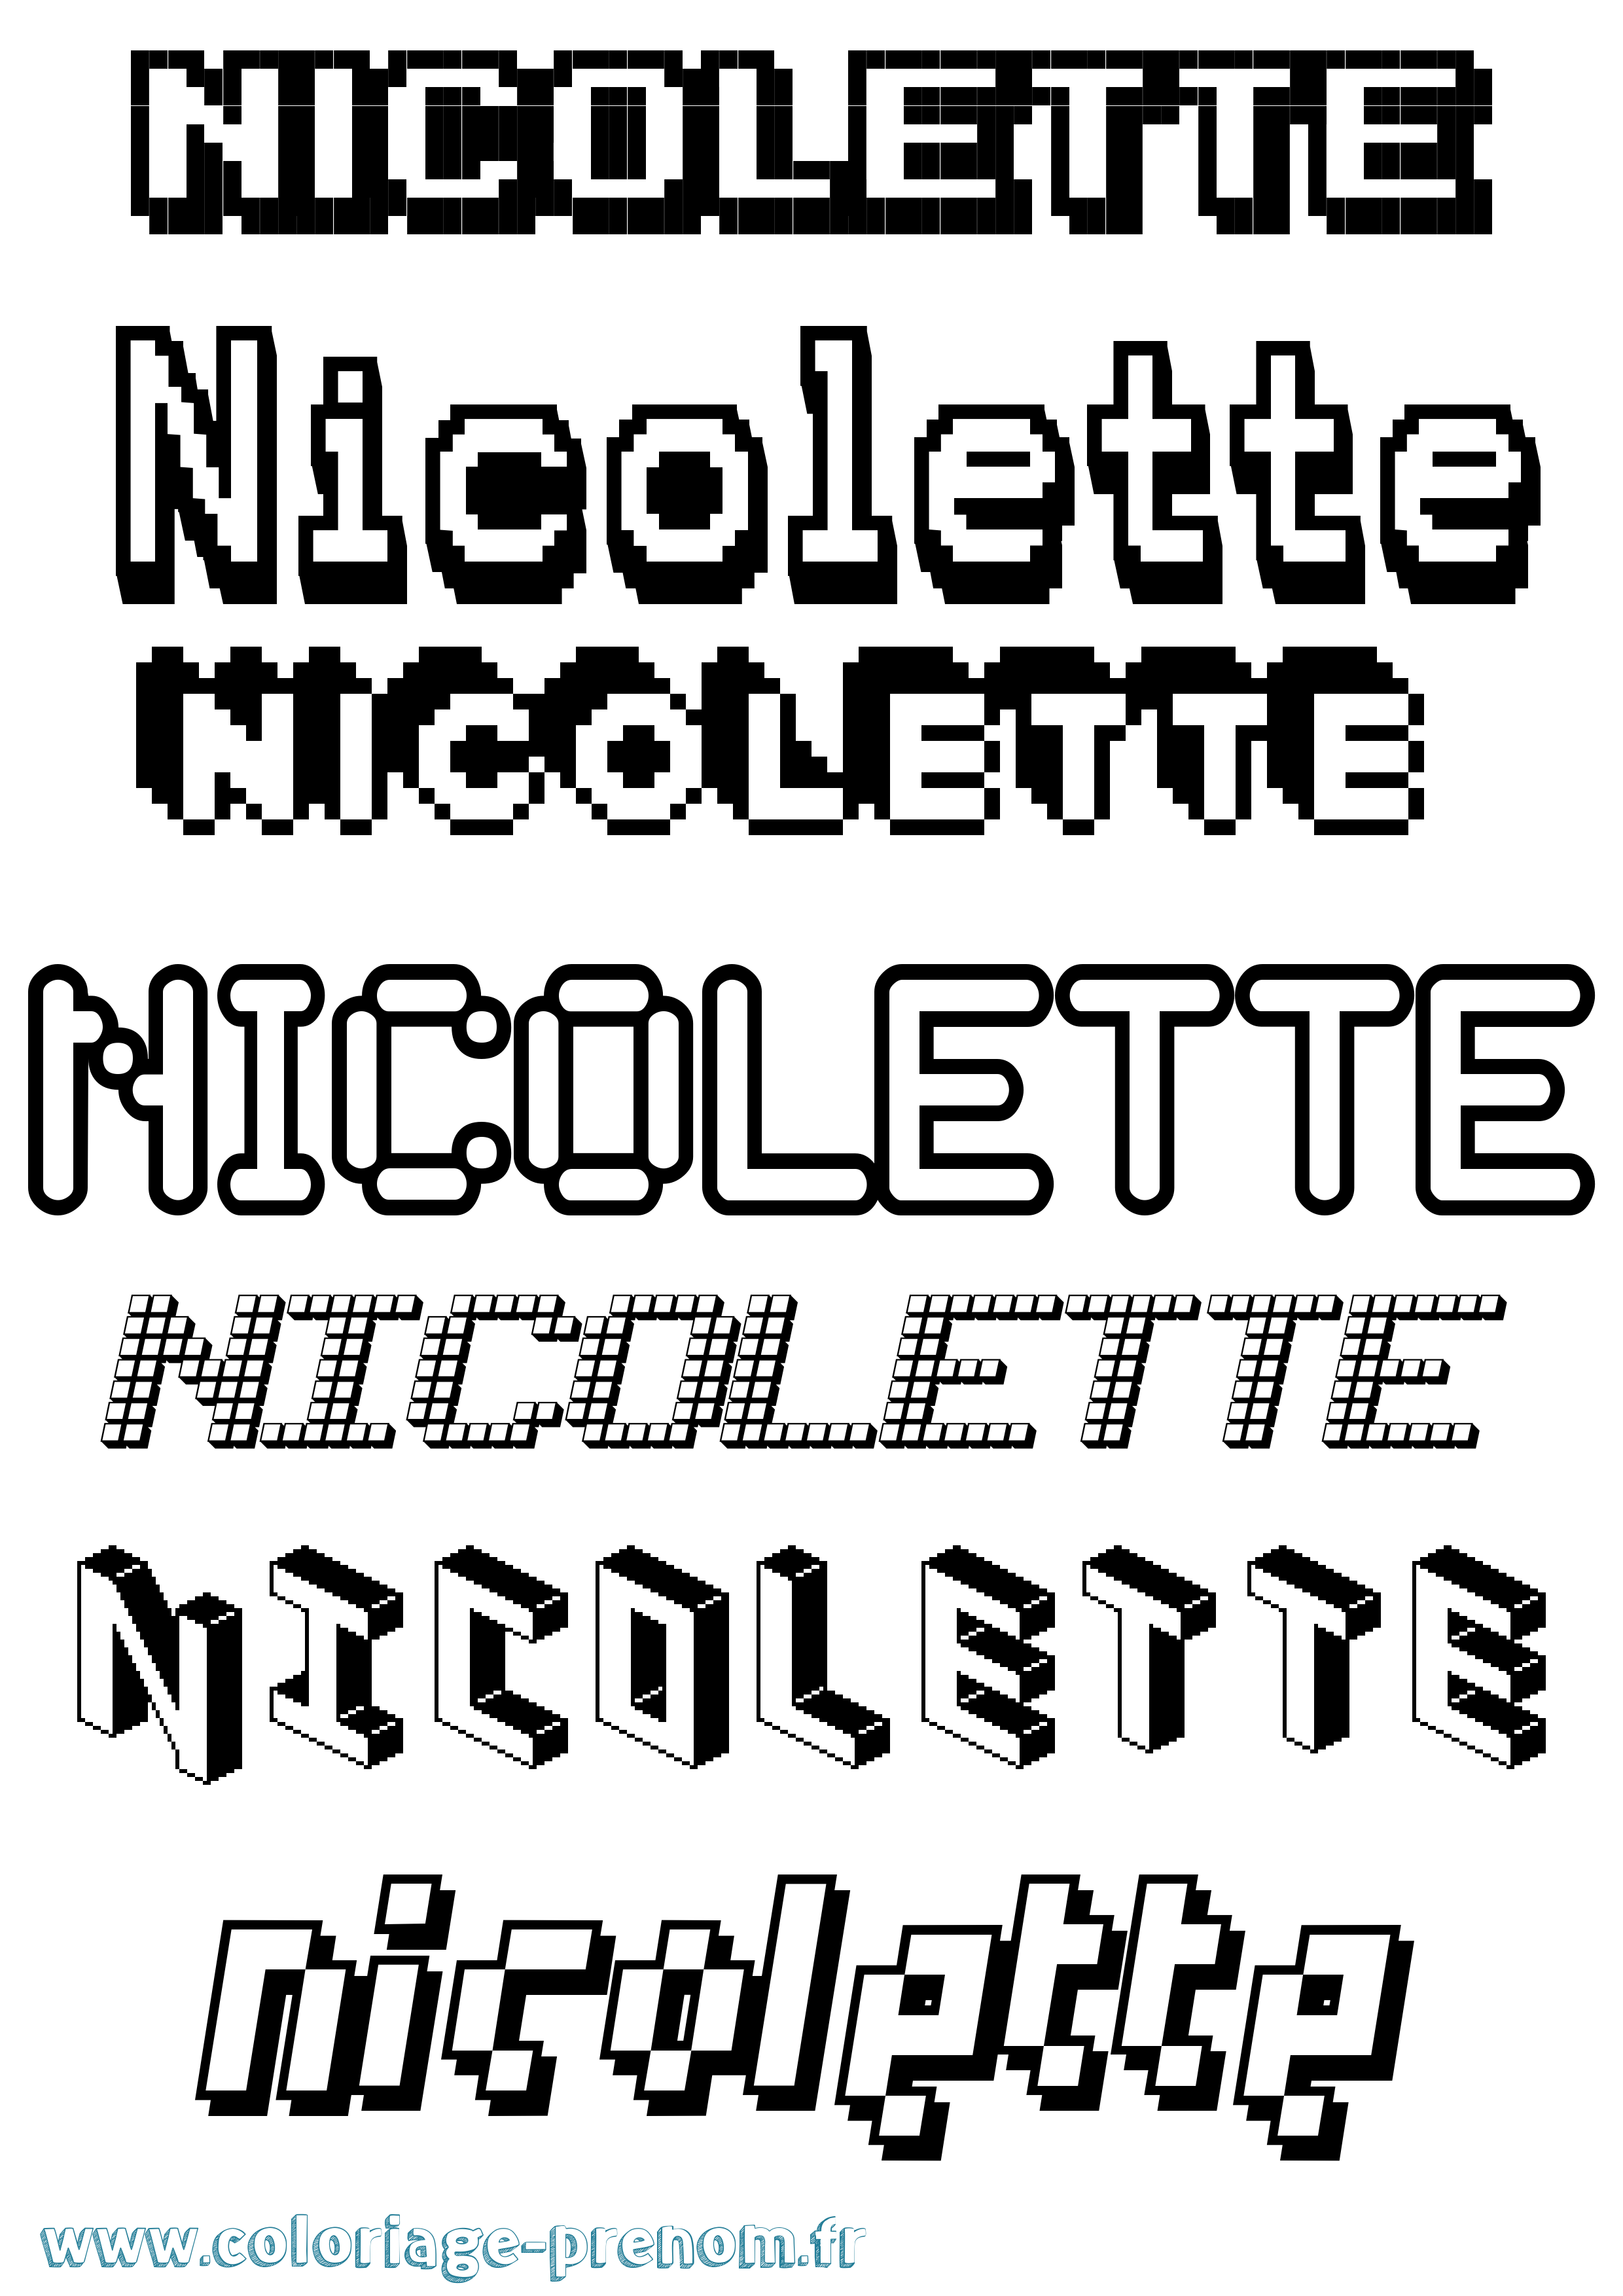 Coloriage prénom Nicolette Pixel